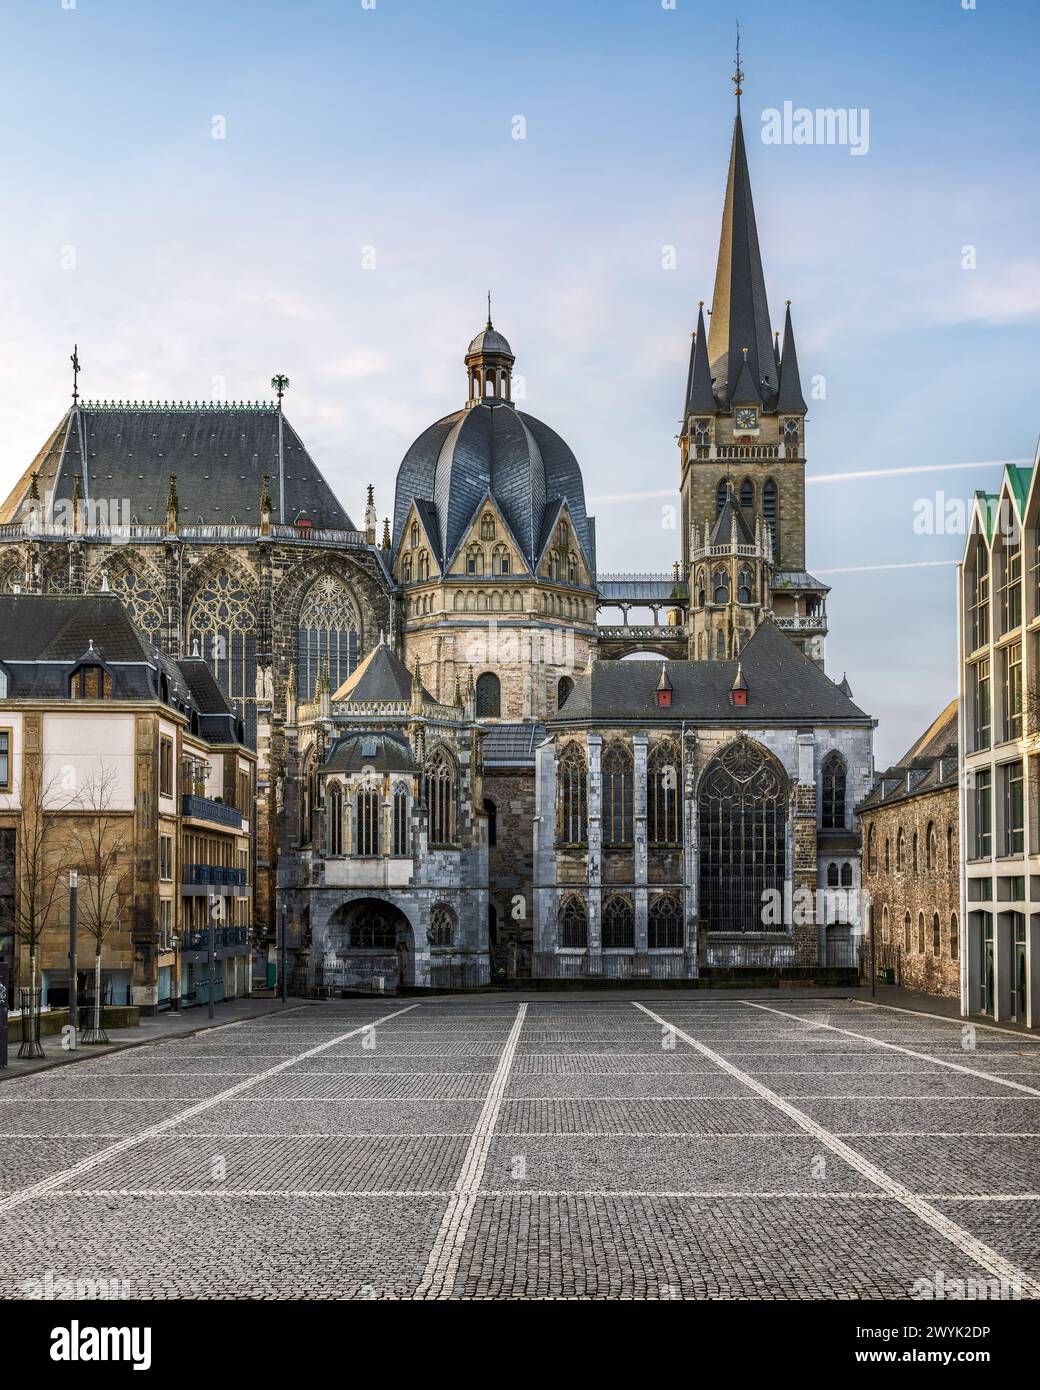 Ein malerischer Blick auf die wunderschöne Architektur in Aachen, Deutschland Stockfoto